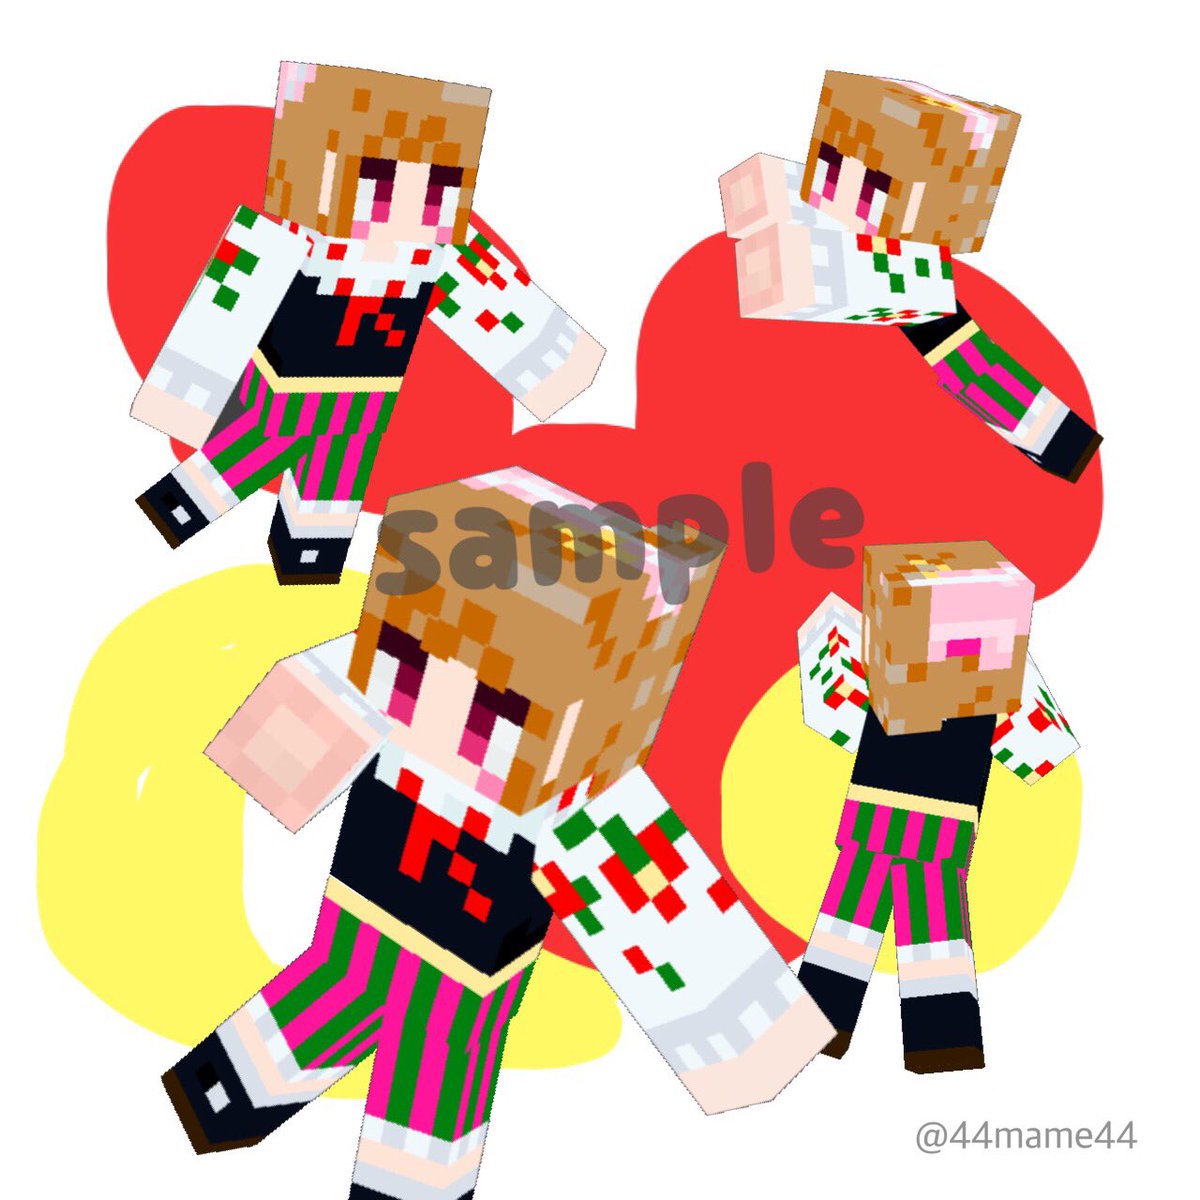 ট ইট র まめ Omms New マイクラスキン ポーランドの民族衣装の様な女の子のスキンです ウォヴィッチの聖体祭で使用されるものです Sample Skin マイクラ マイクラスキン